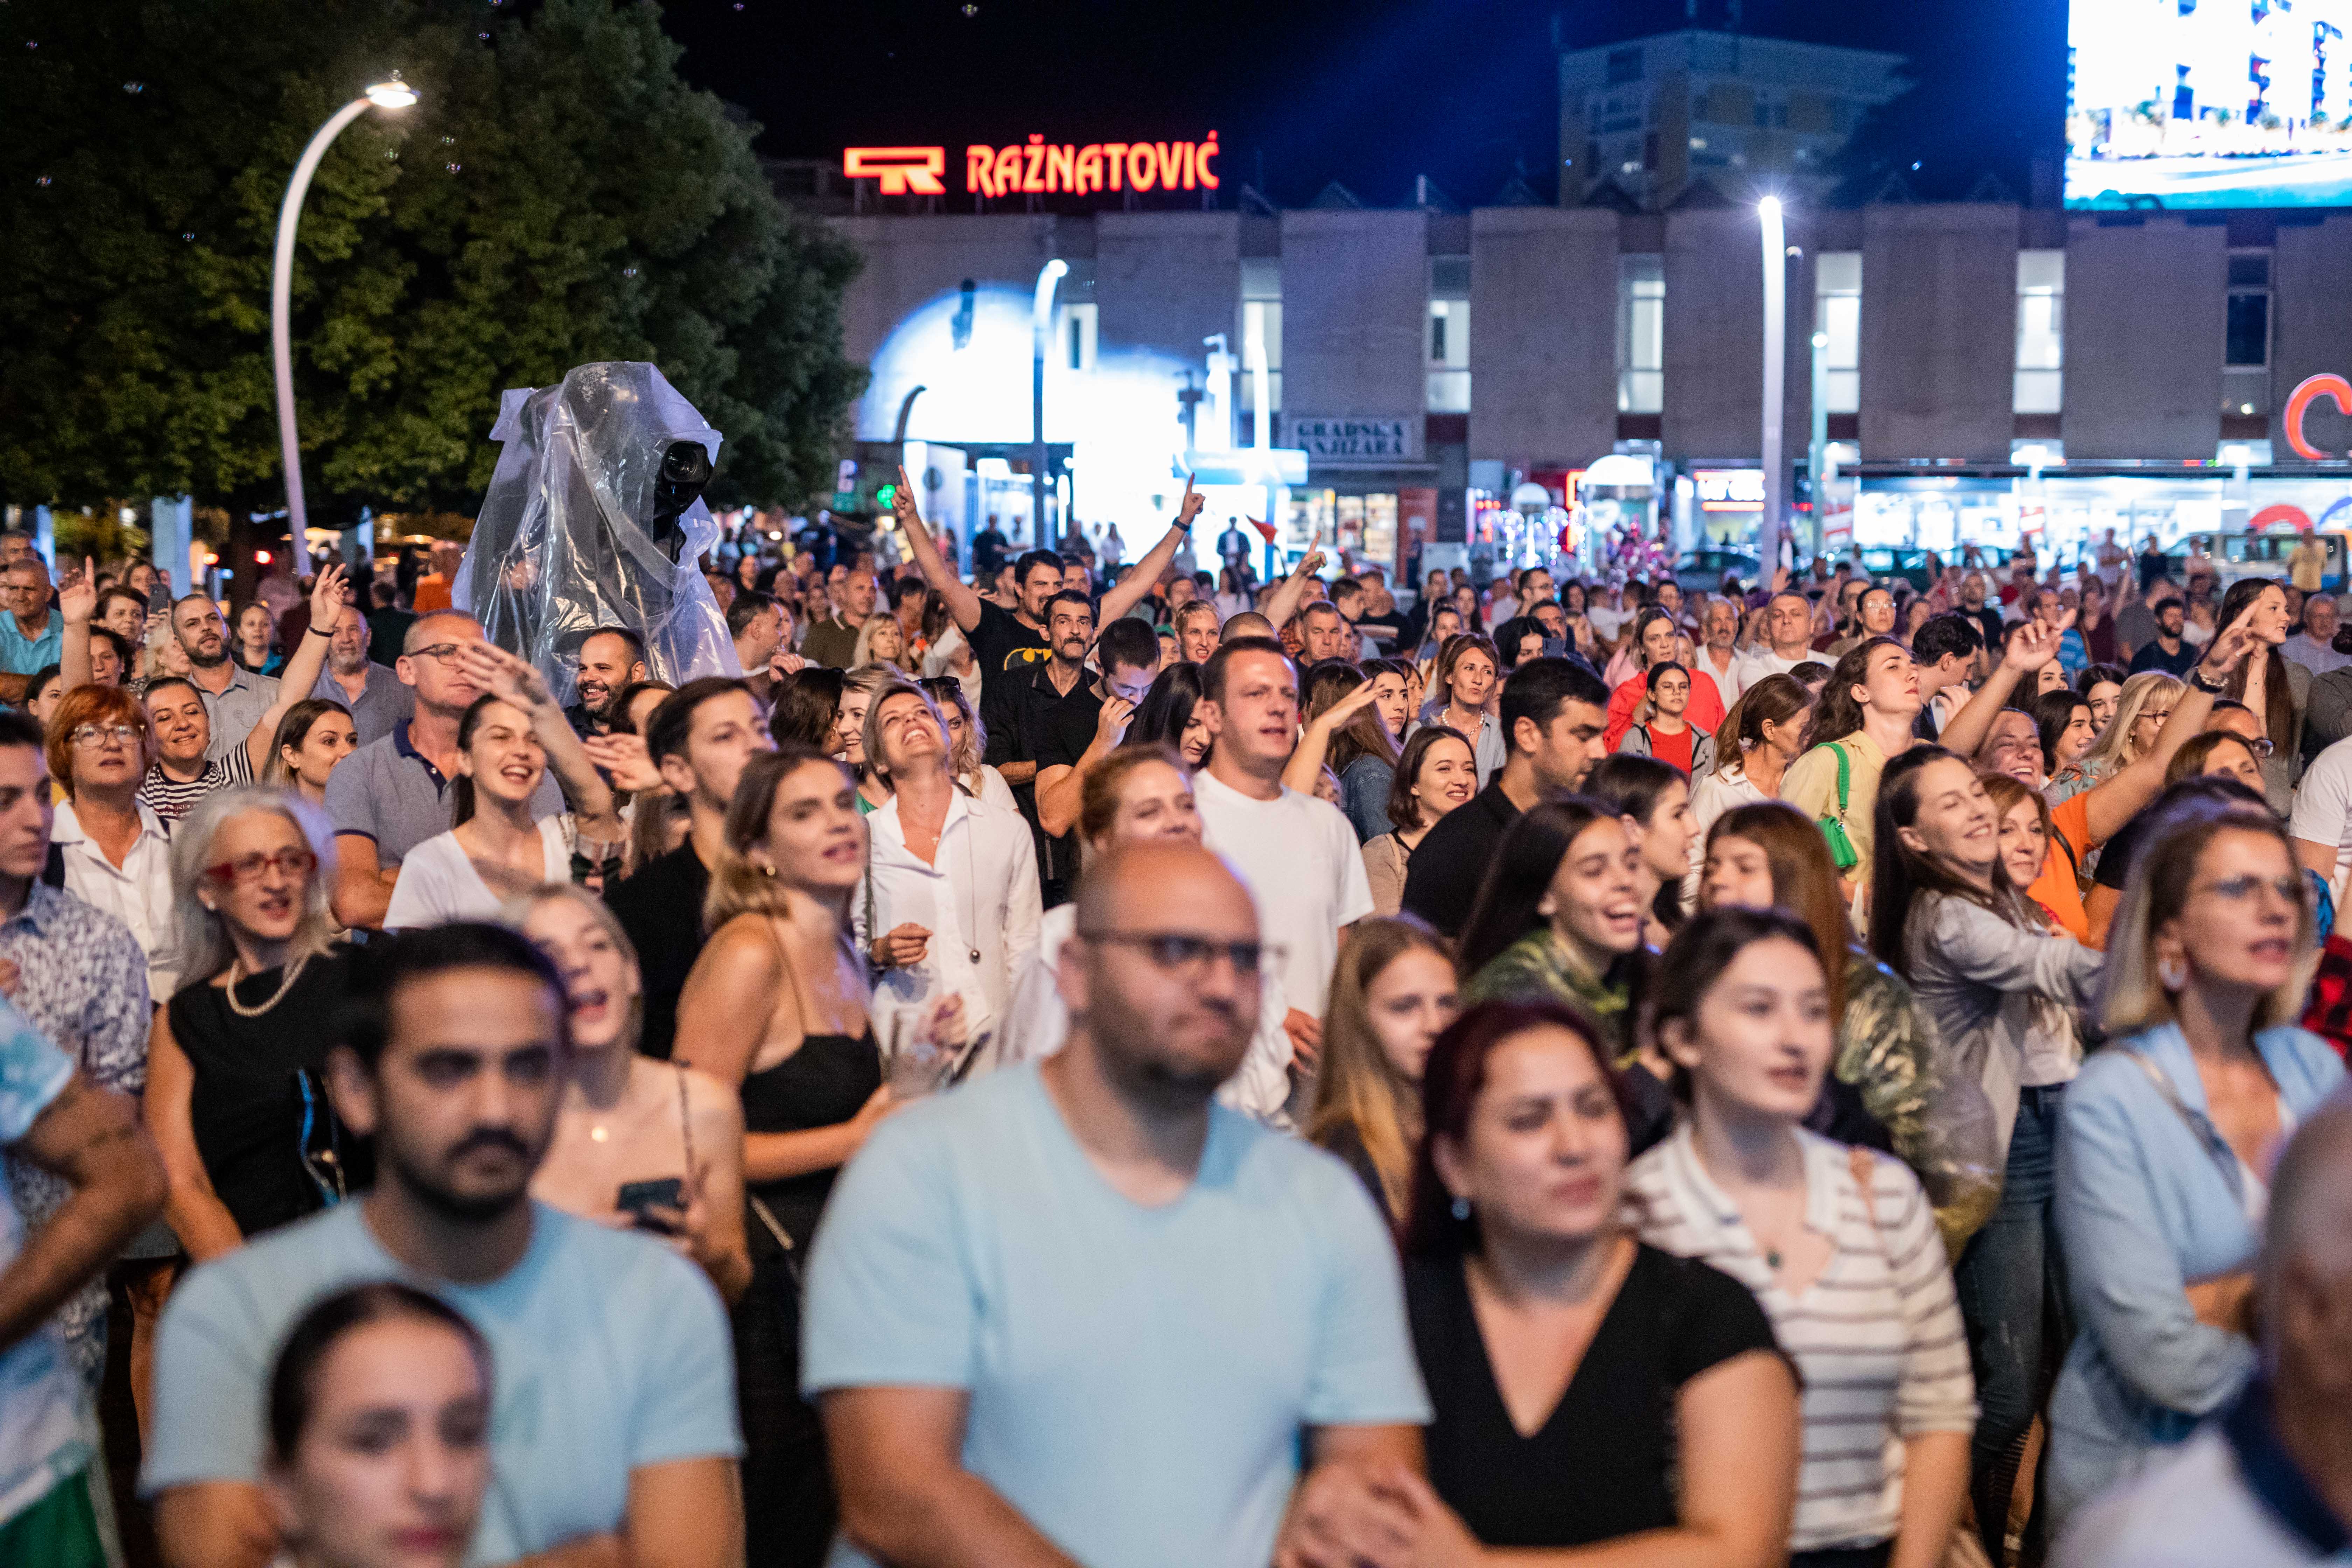 Proslavom velikog jubileja u Podgorici grupa Makadam priredila veče za pamćenje